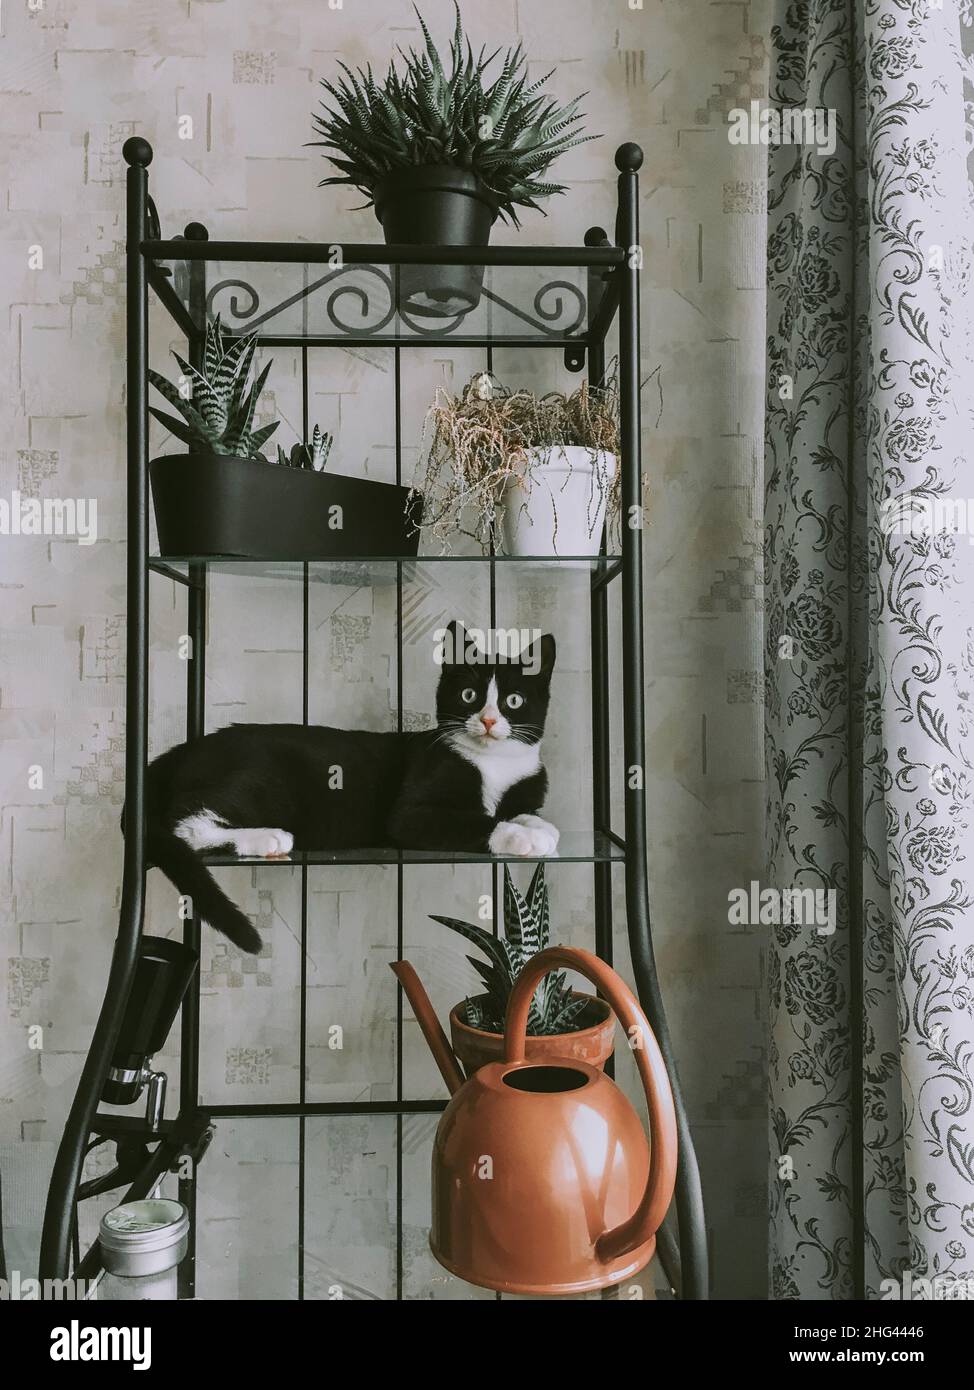 bel gatto nero con una museruola bianca si trova su una mensola di vetro fiore. Interno della camera bellissimo. Foto Stock